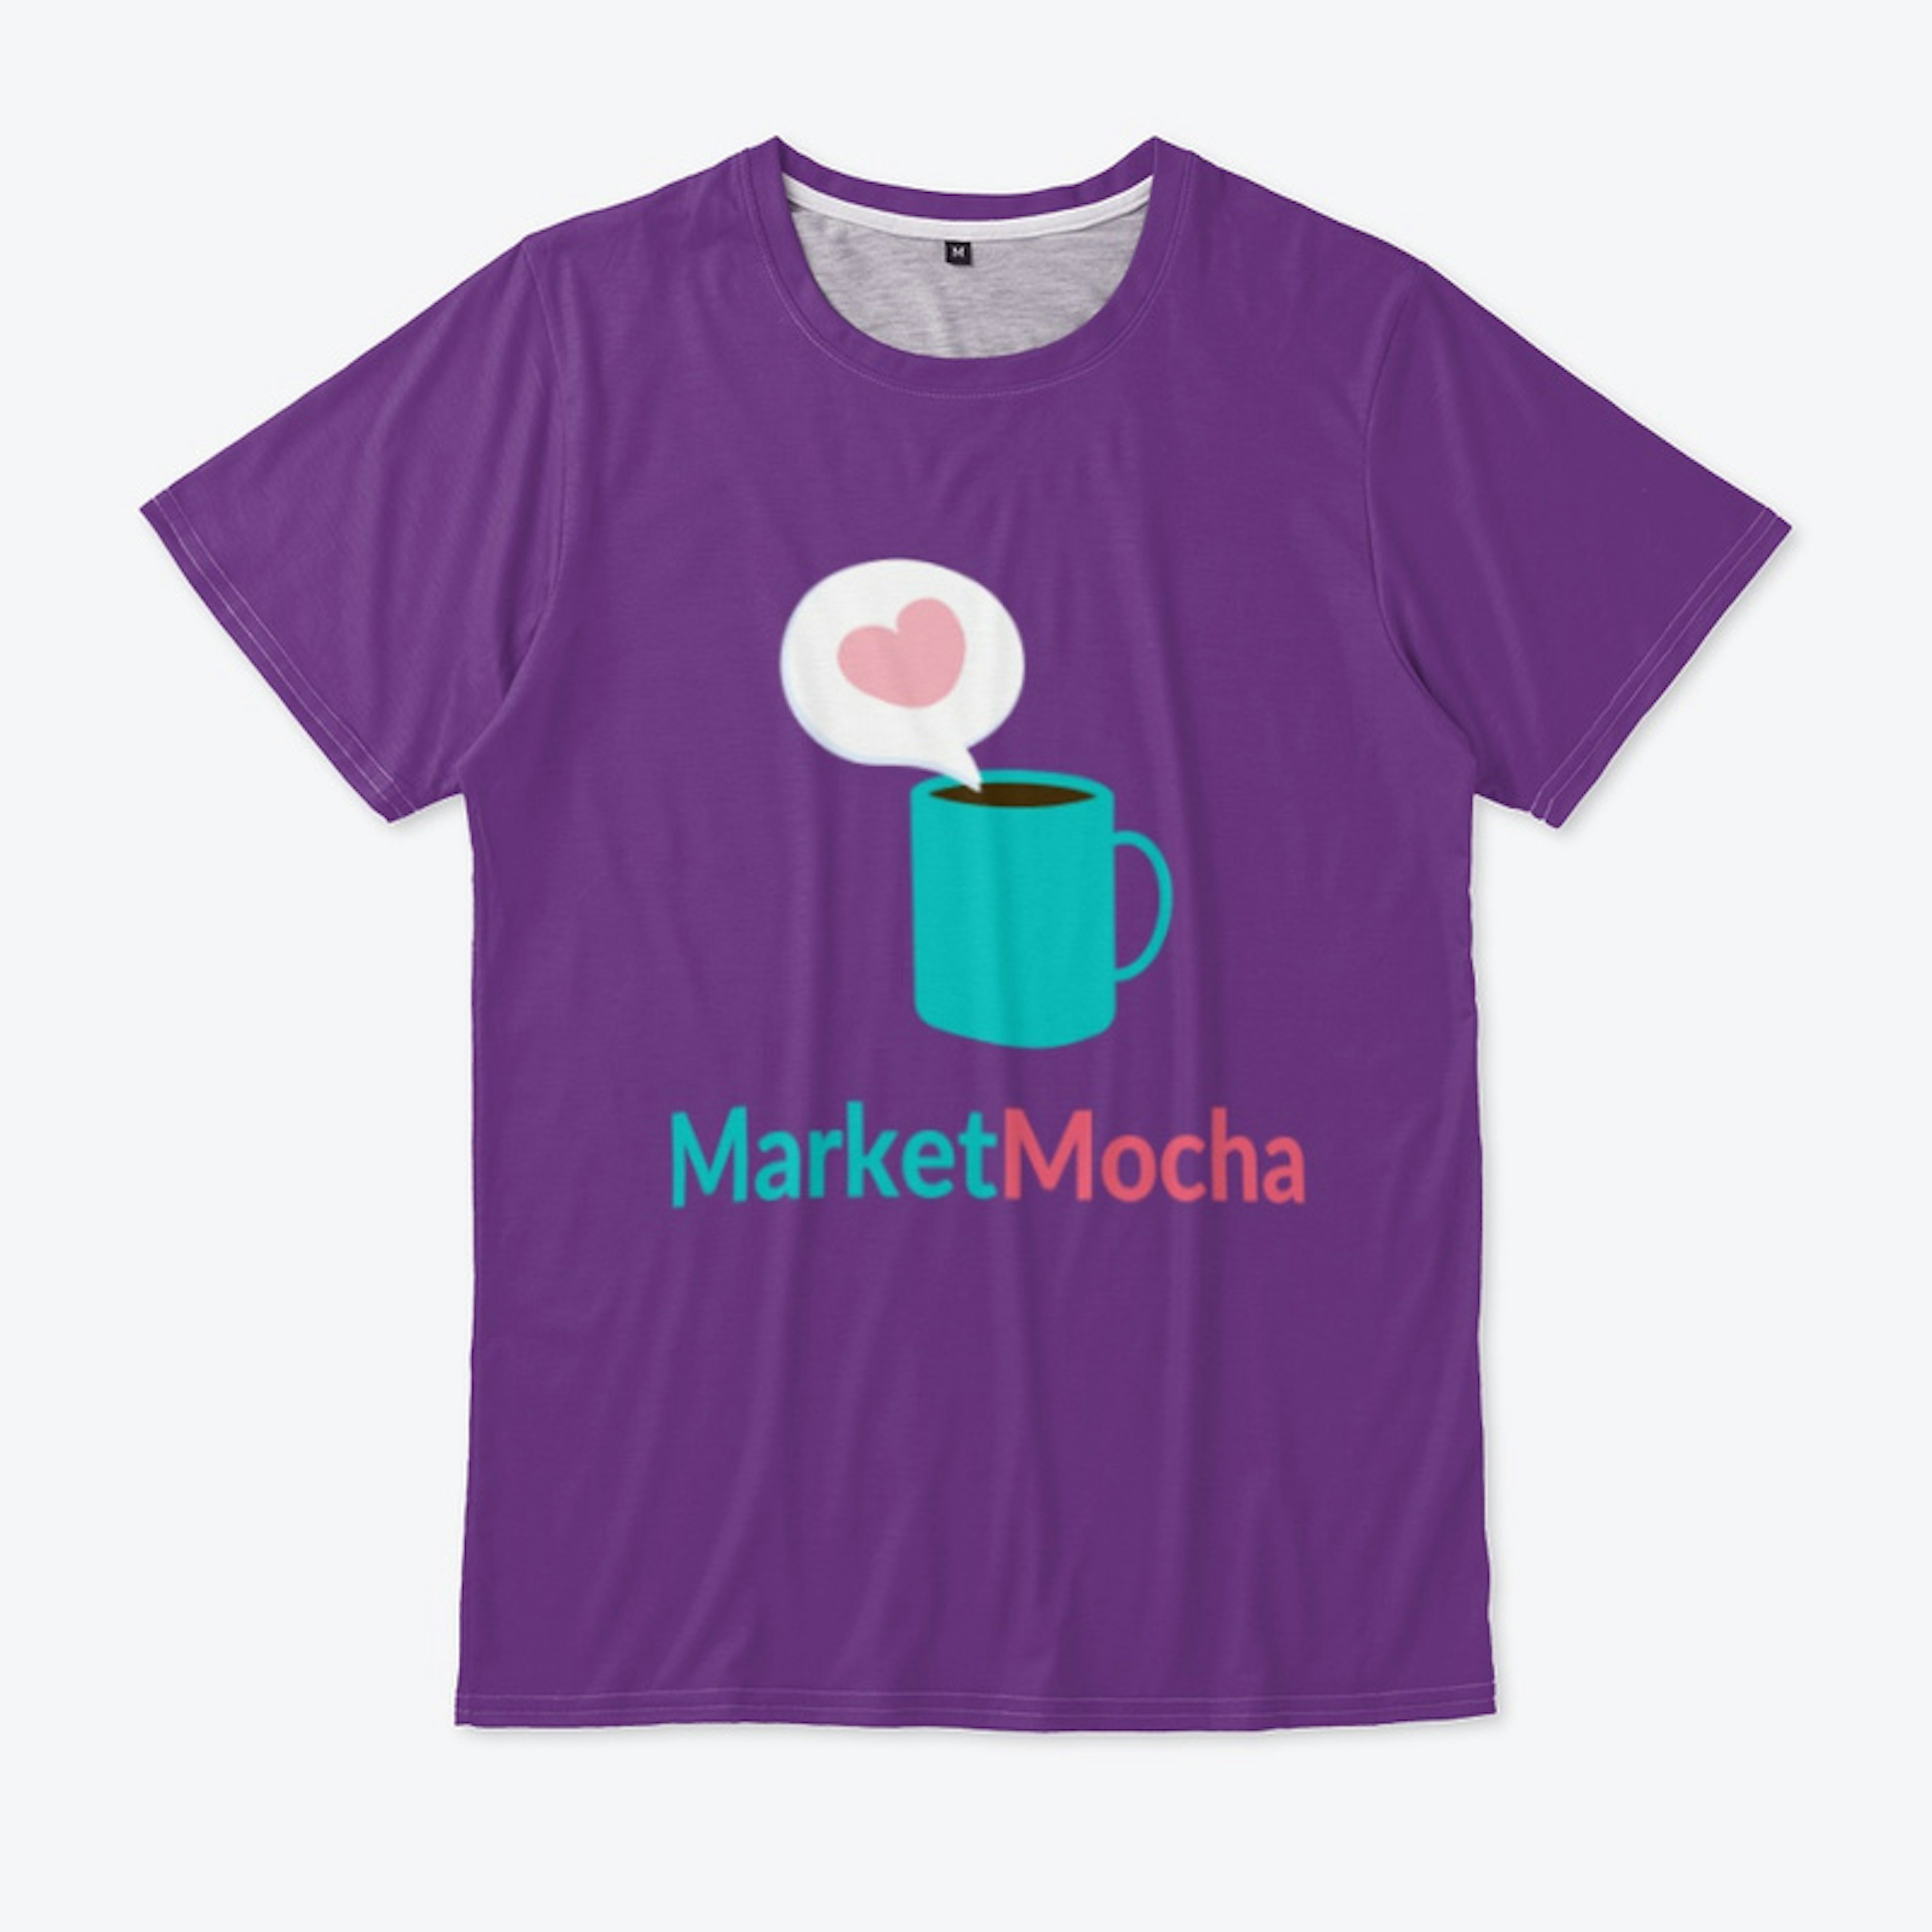 Market Mocha Merch